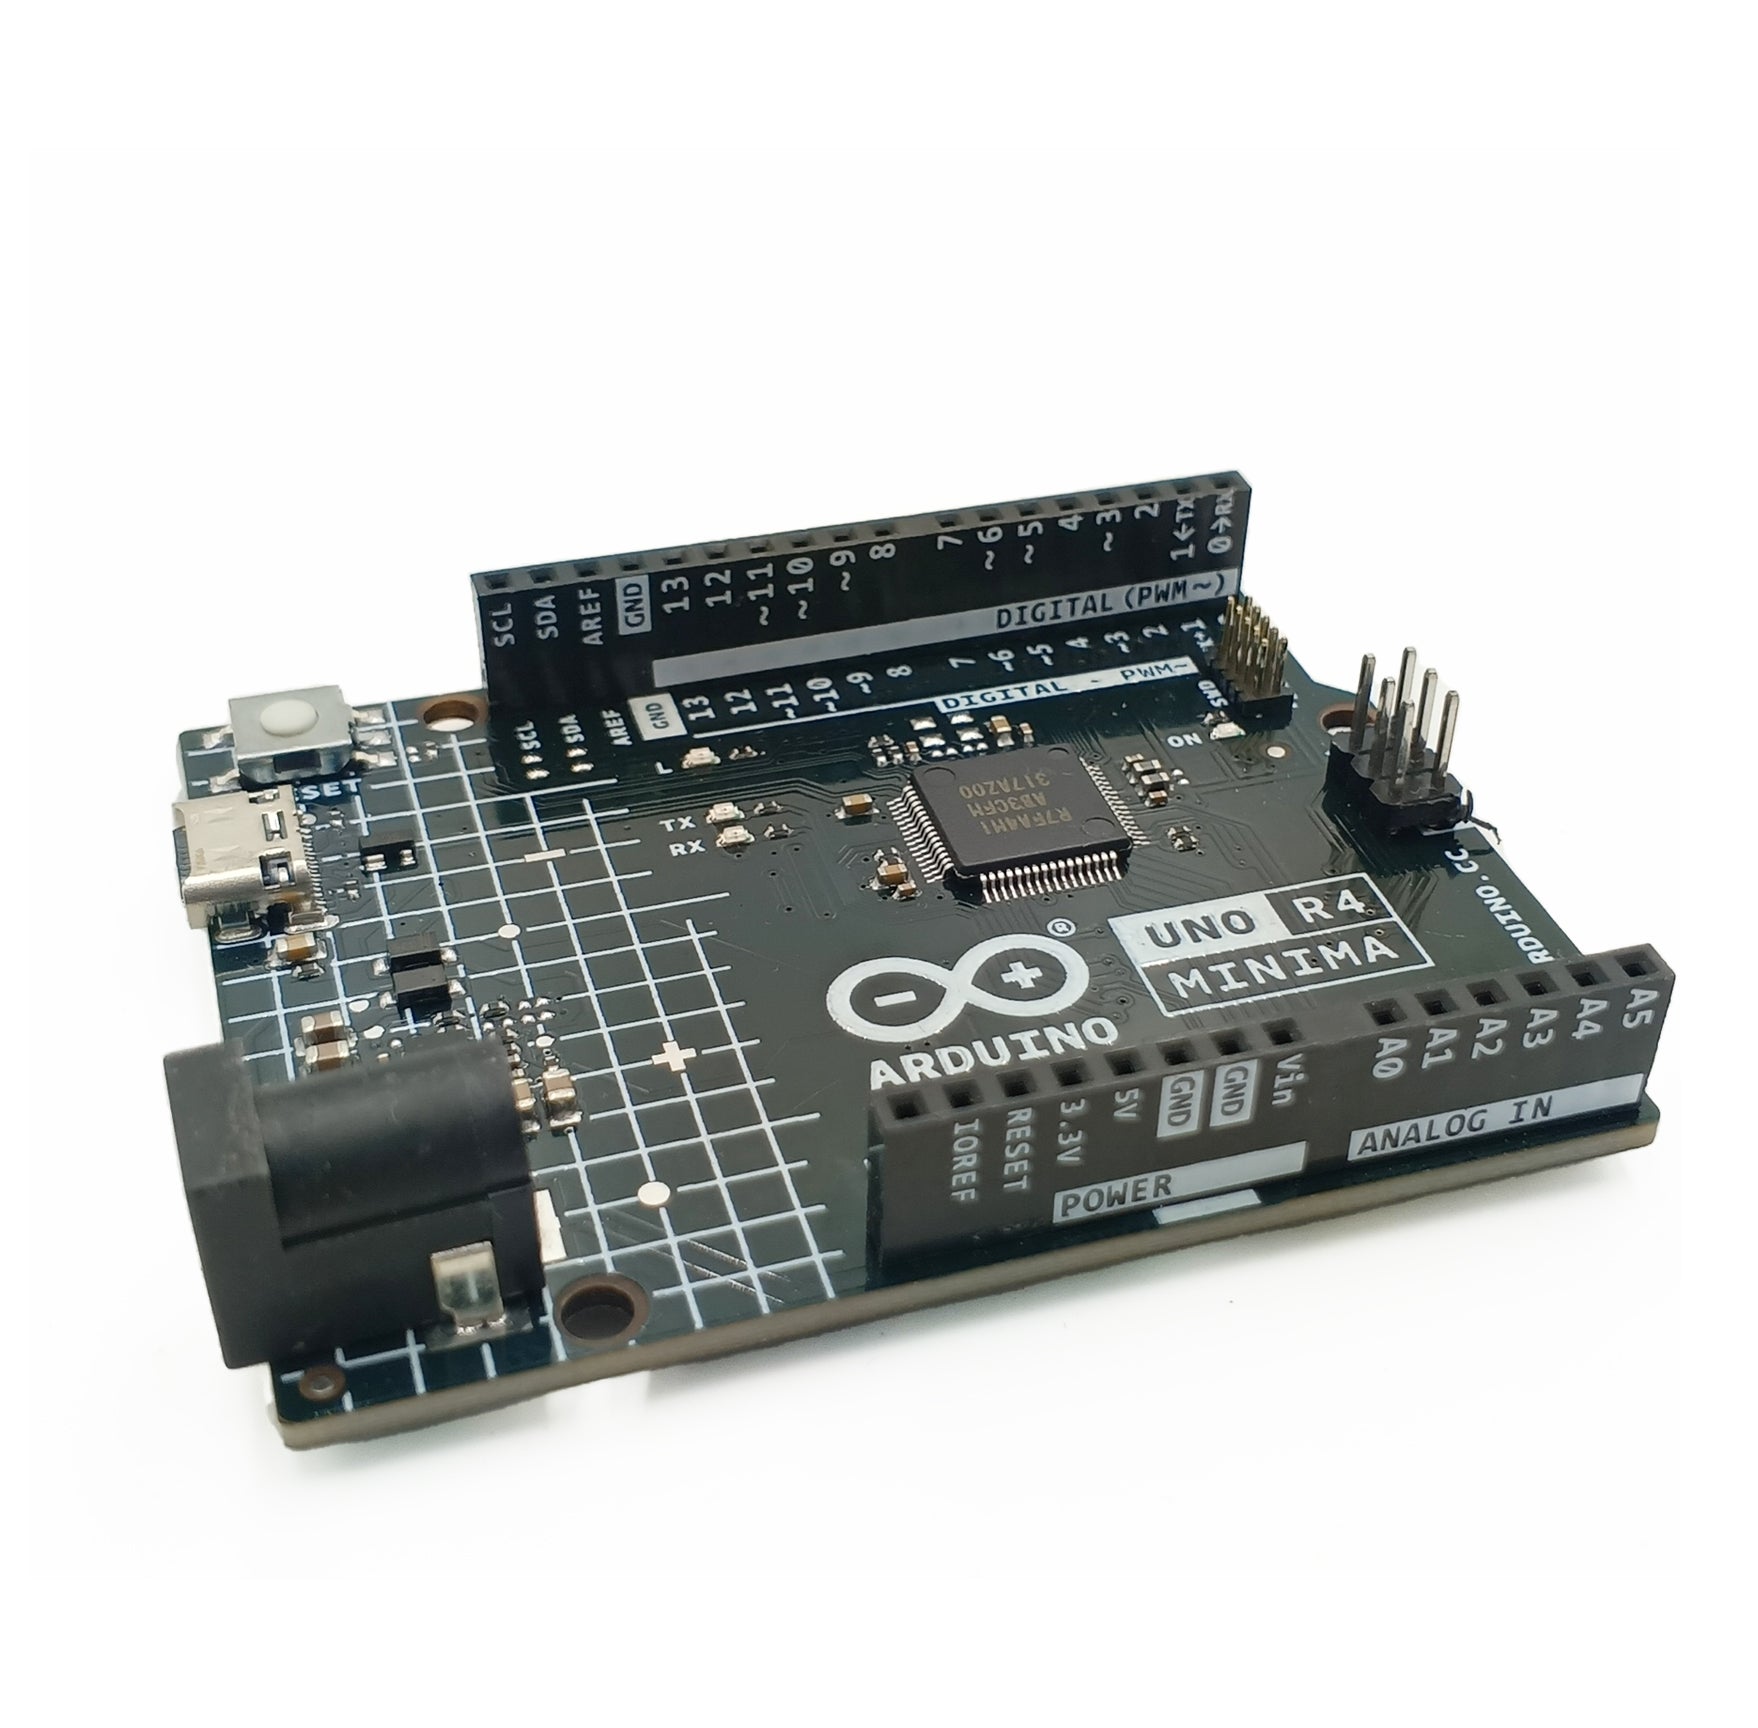  Arduino UNO R4 Minima [ABX00080] - Renesas RA4M1 - USB